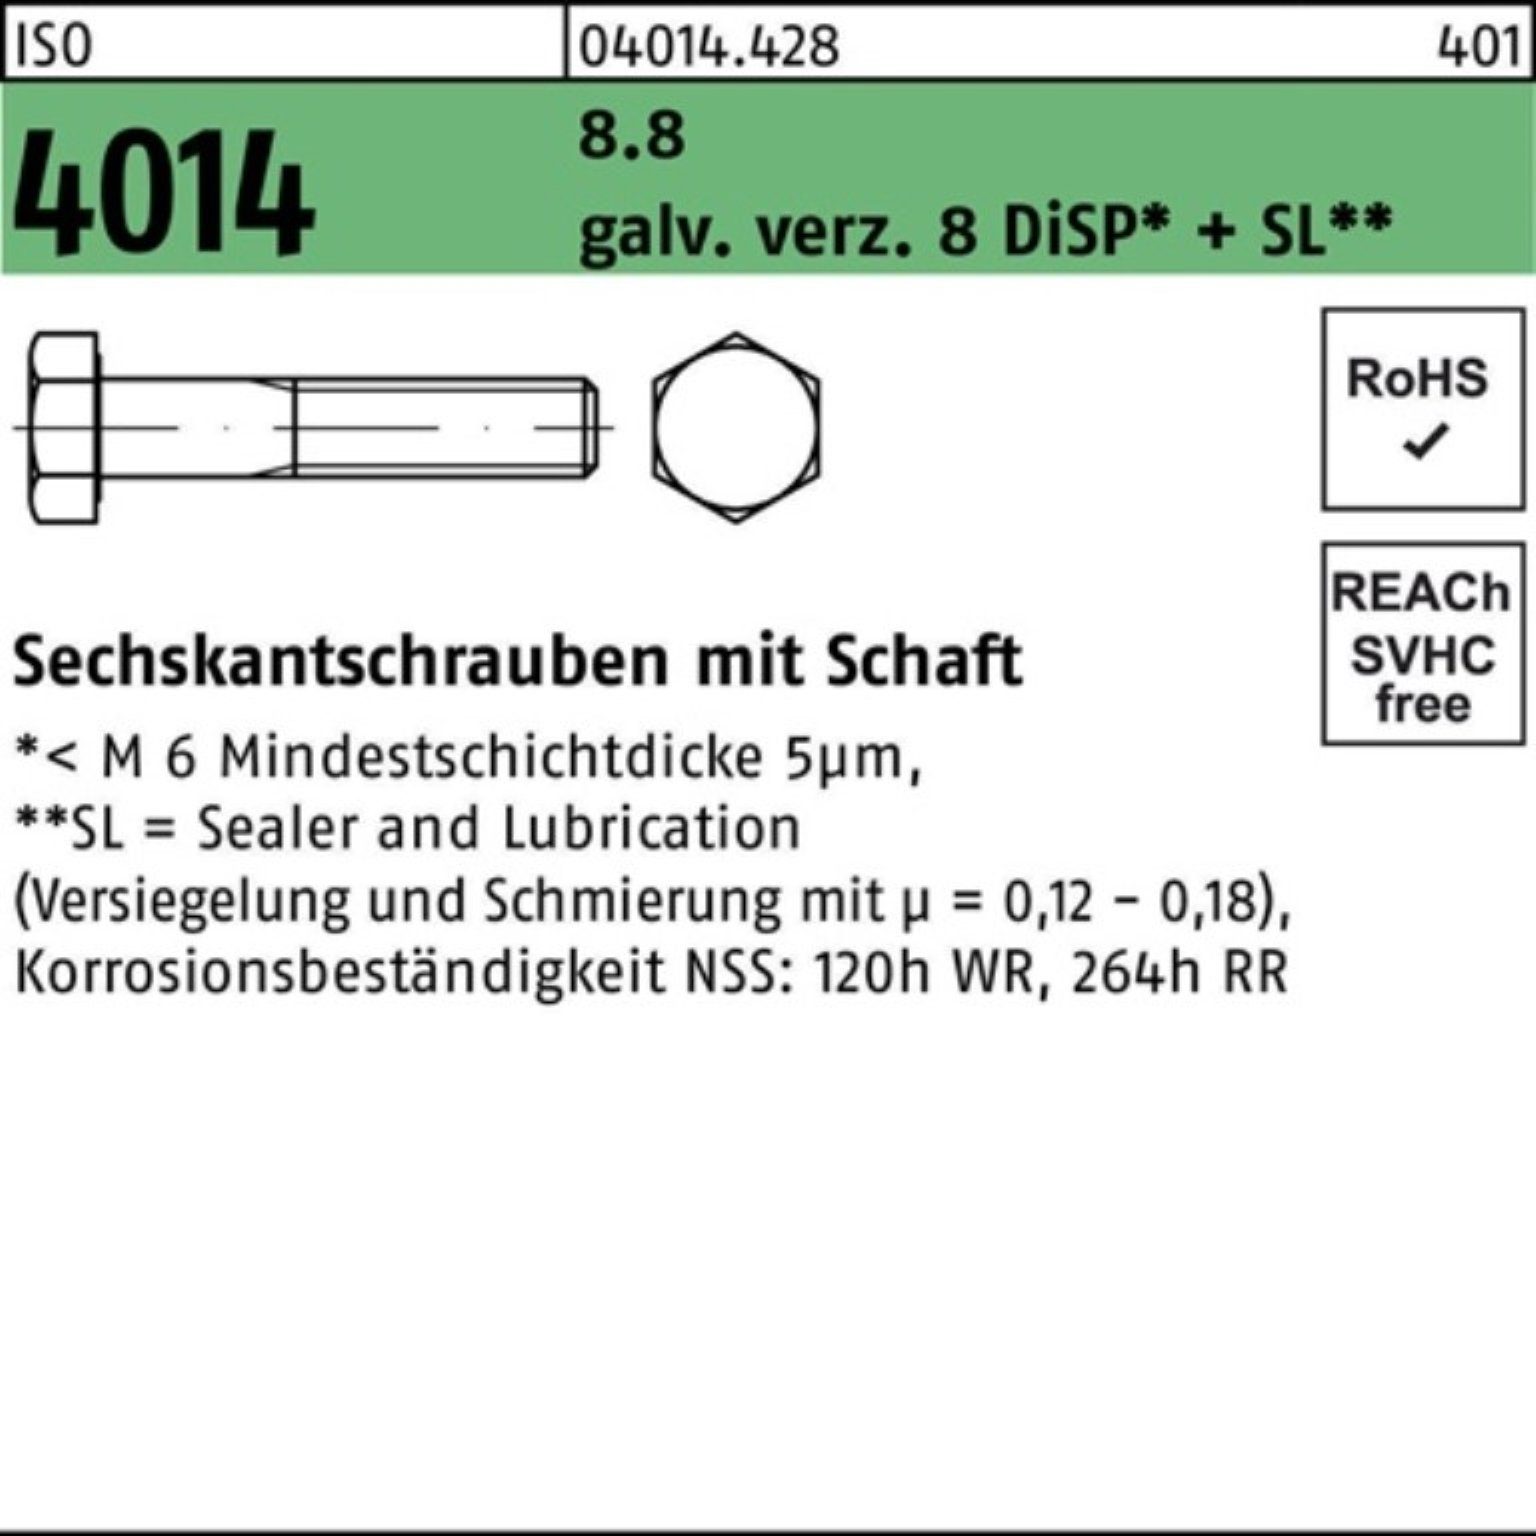 Bufab Sechskantschraube 100er Pack Sechskantschraube 8.8 8 Schaft D 4014 ISO galv.verz. M14x75